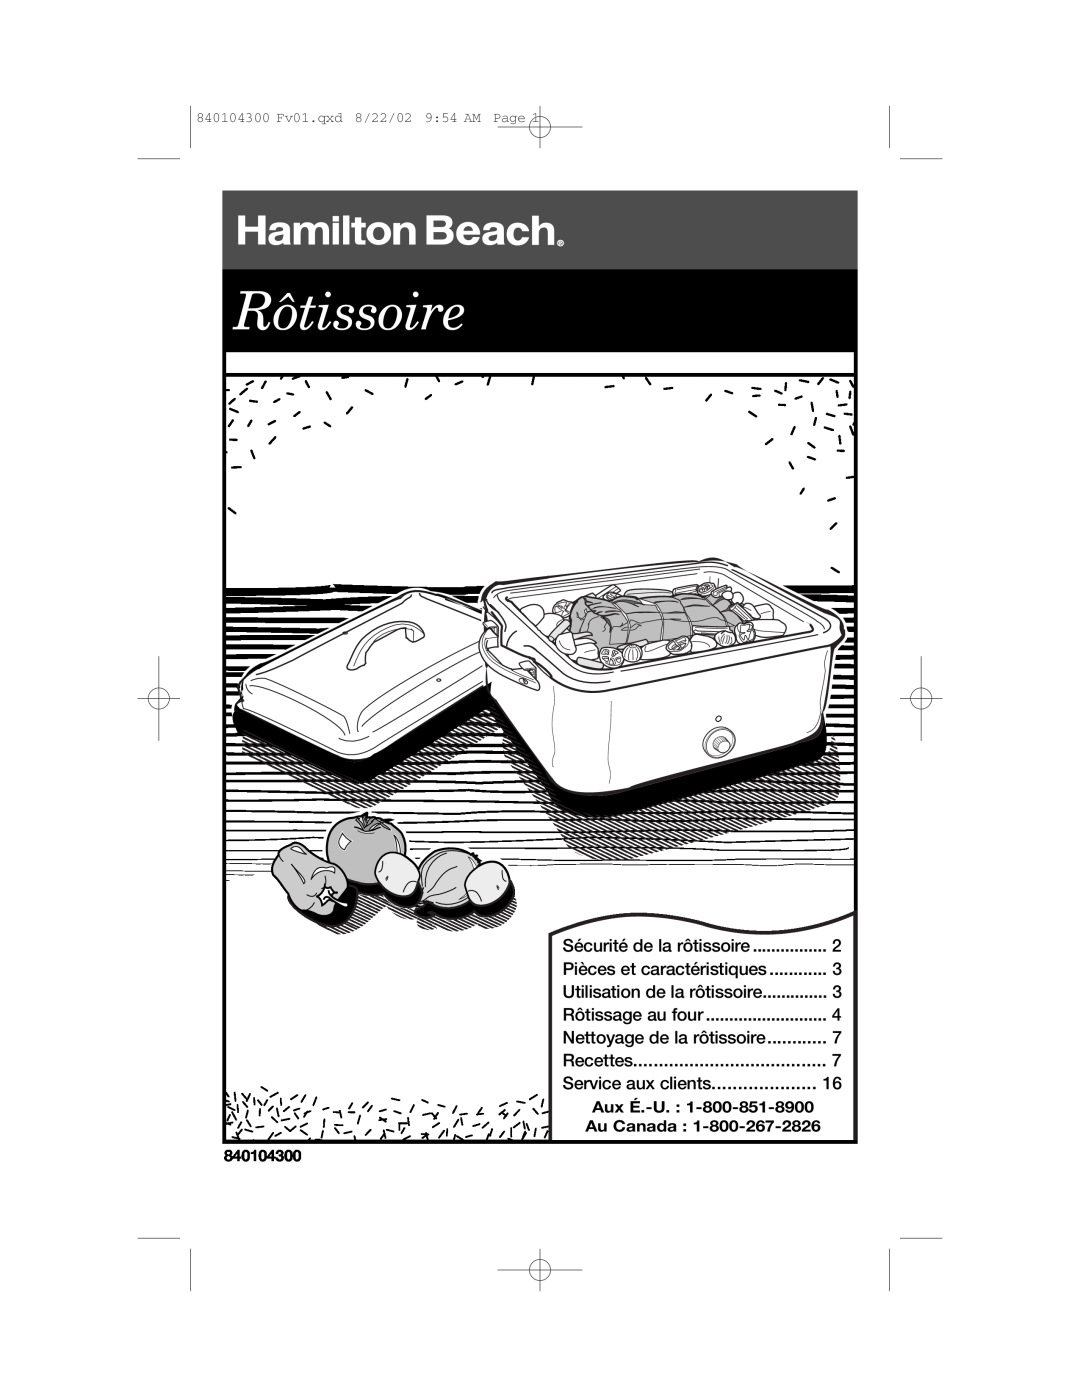 Hamilton Beach 32180C manual Nettoyage de la rôtissoire, Service aux clients, Rôtissoire, Page, 840104300 Fv01.qxd 